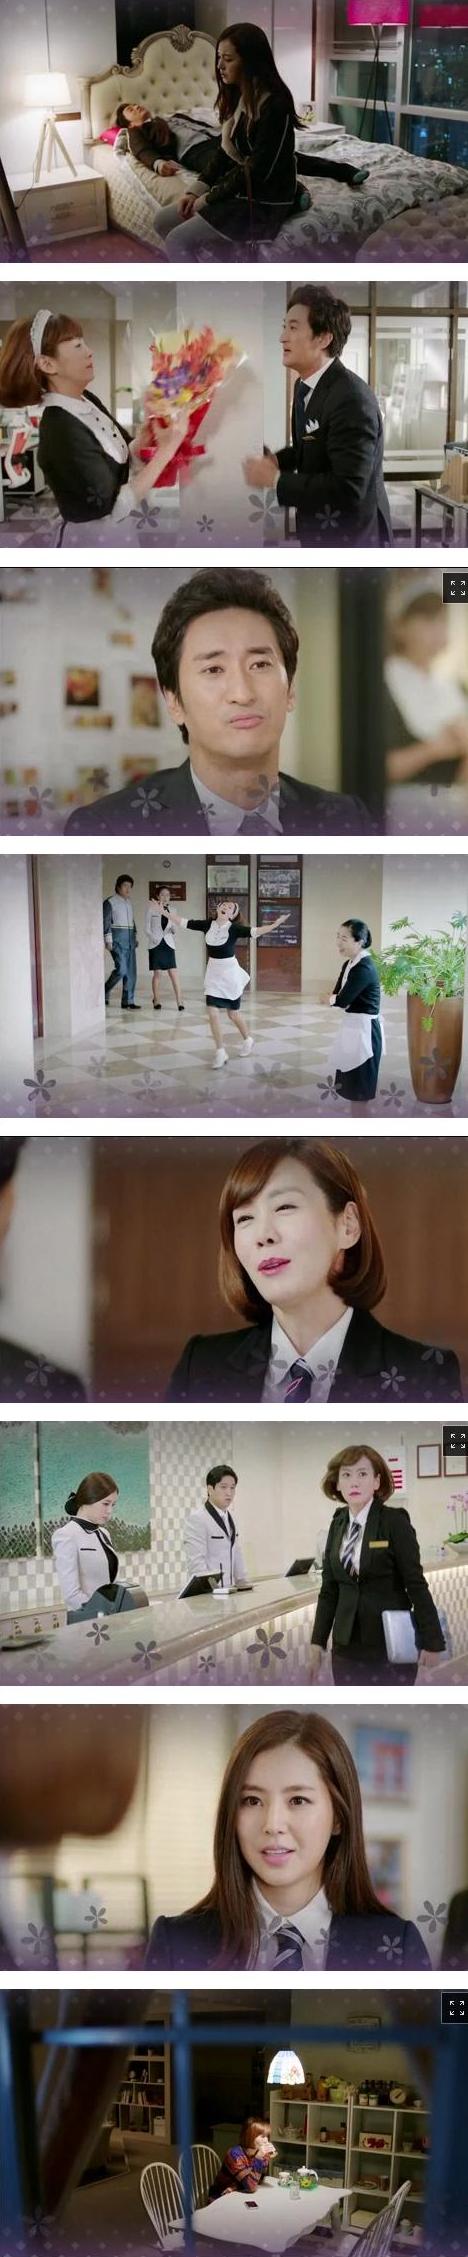 episode 14 captures for the Korean drama 'Ooh La La Couple'